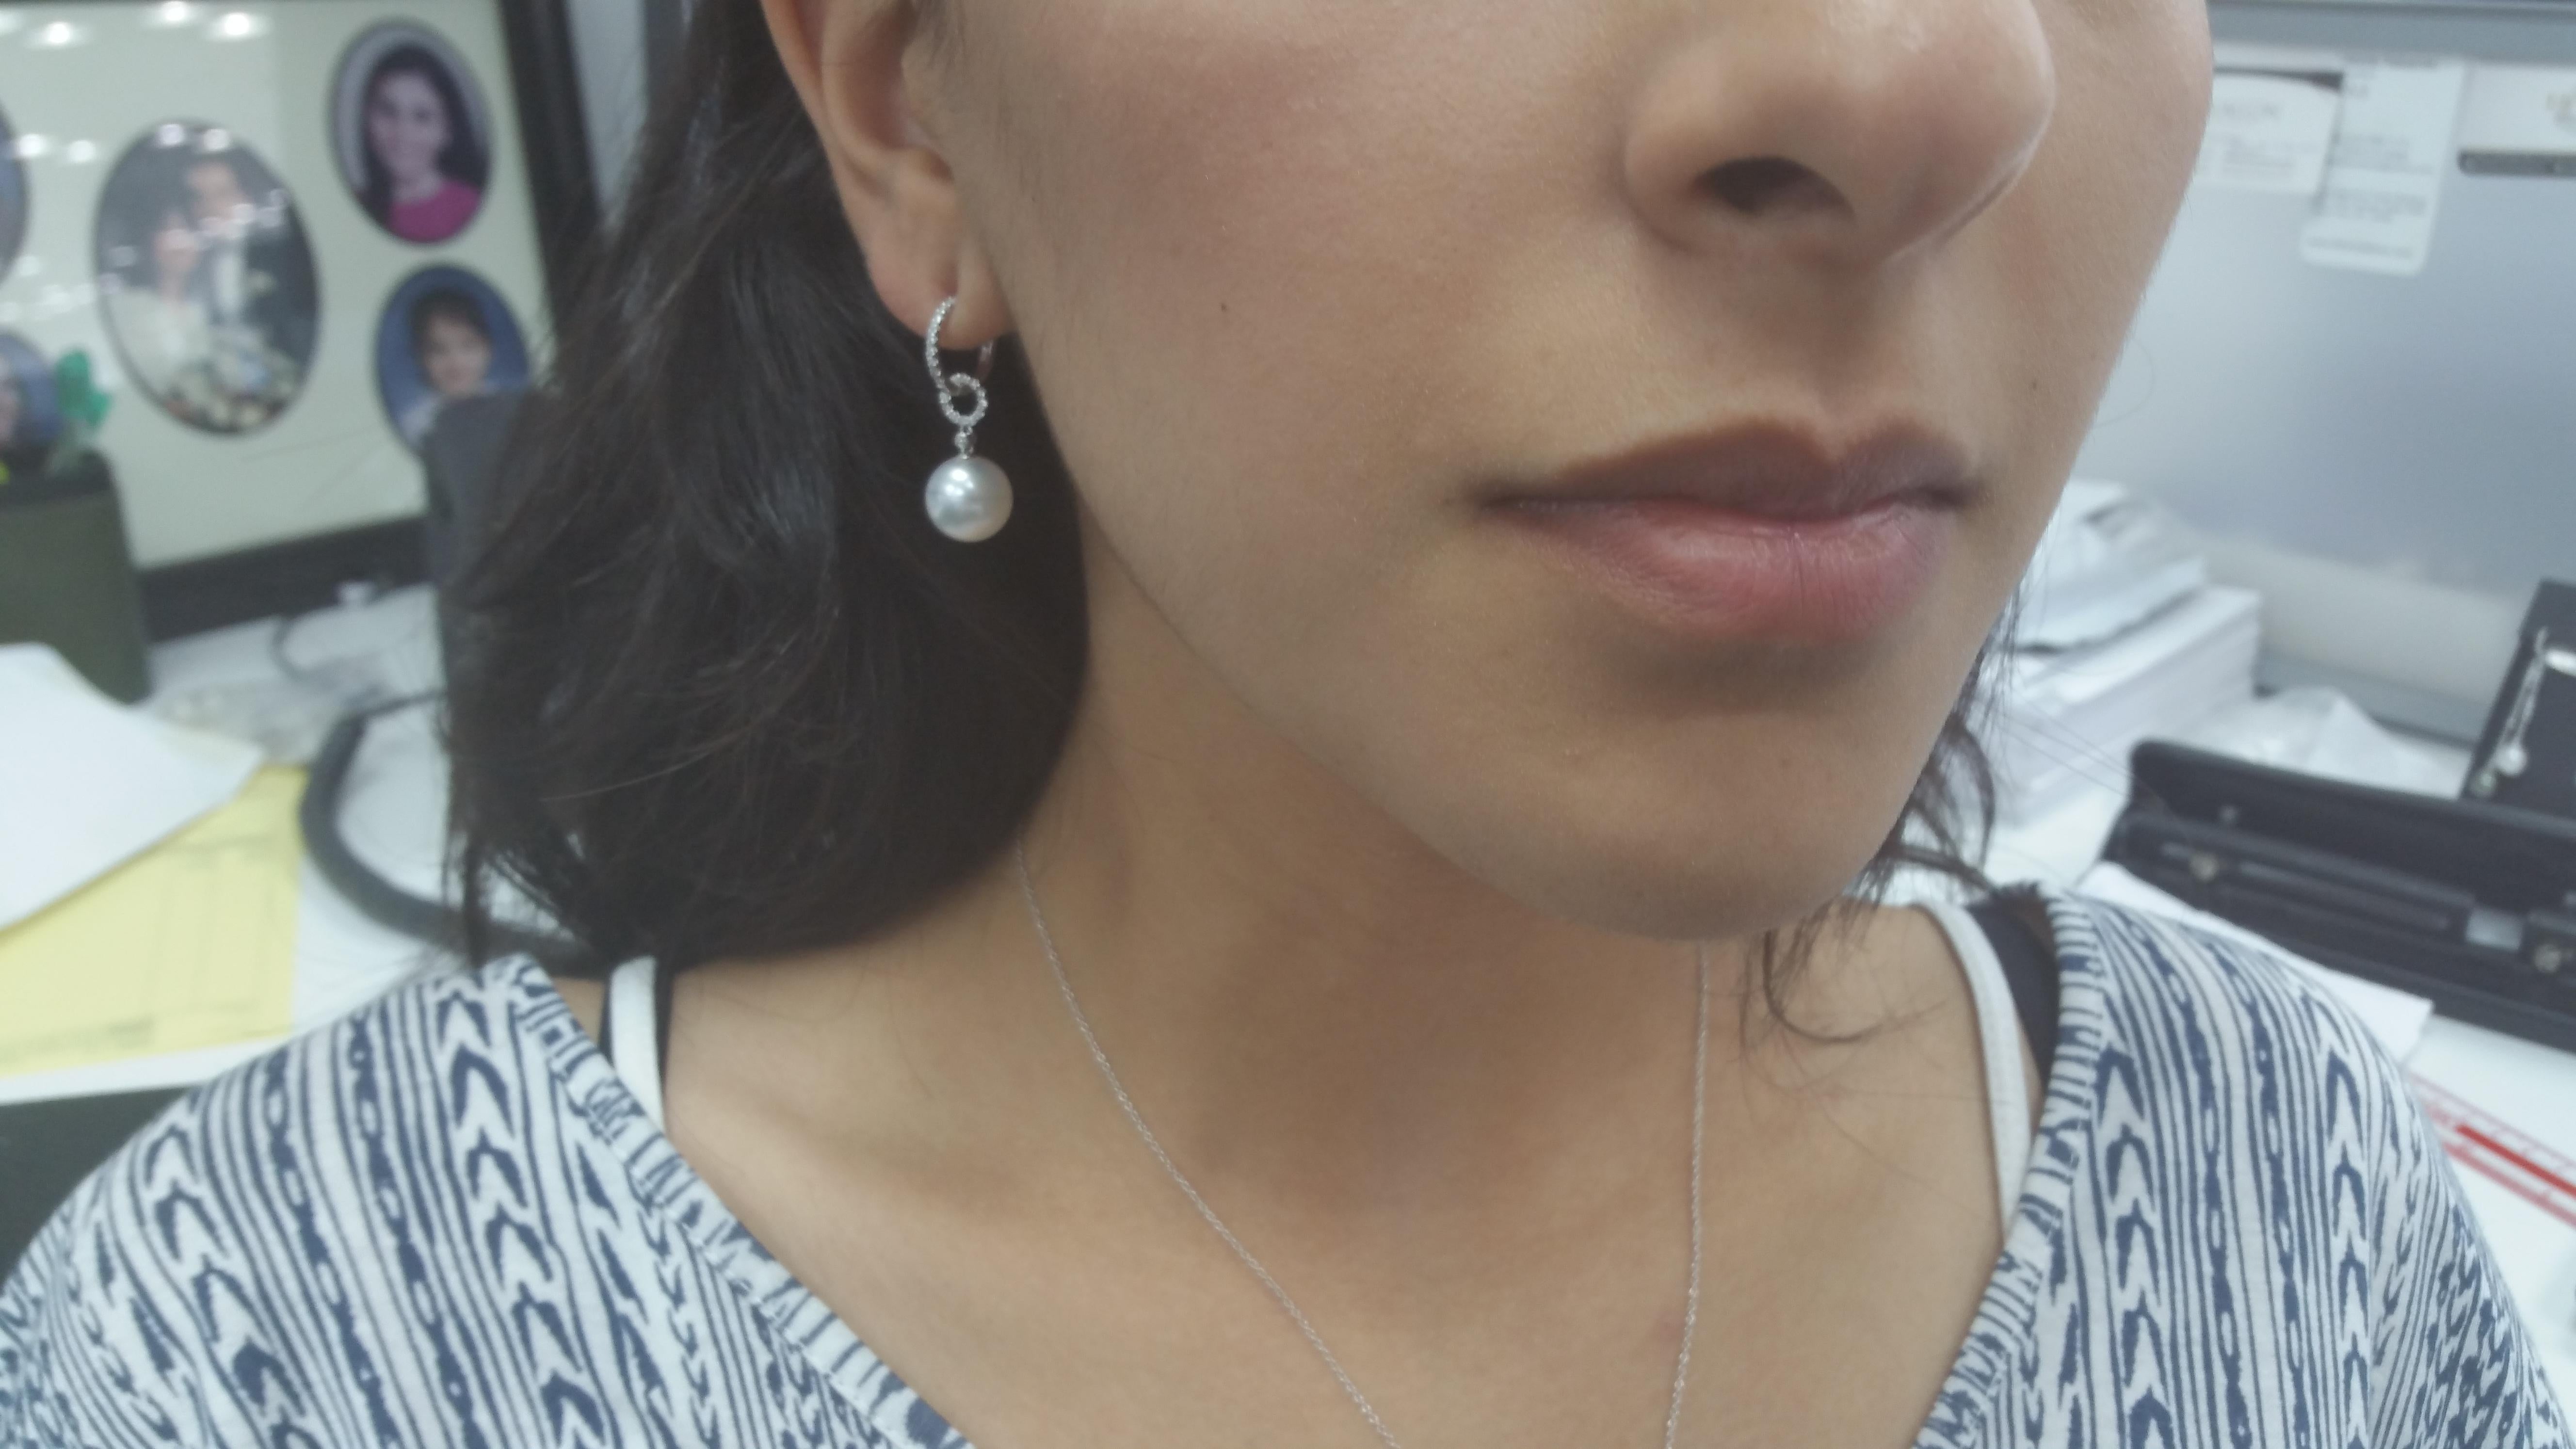 11 mm earrings